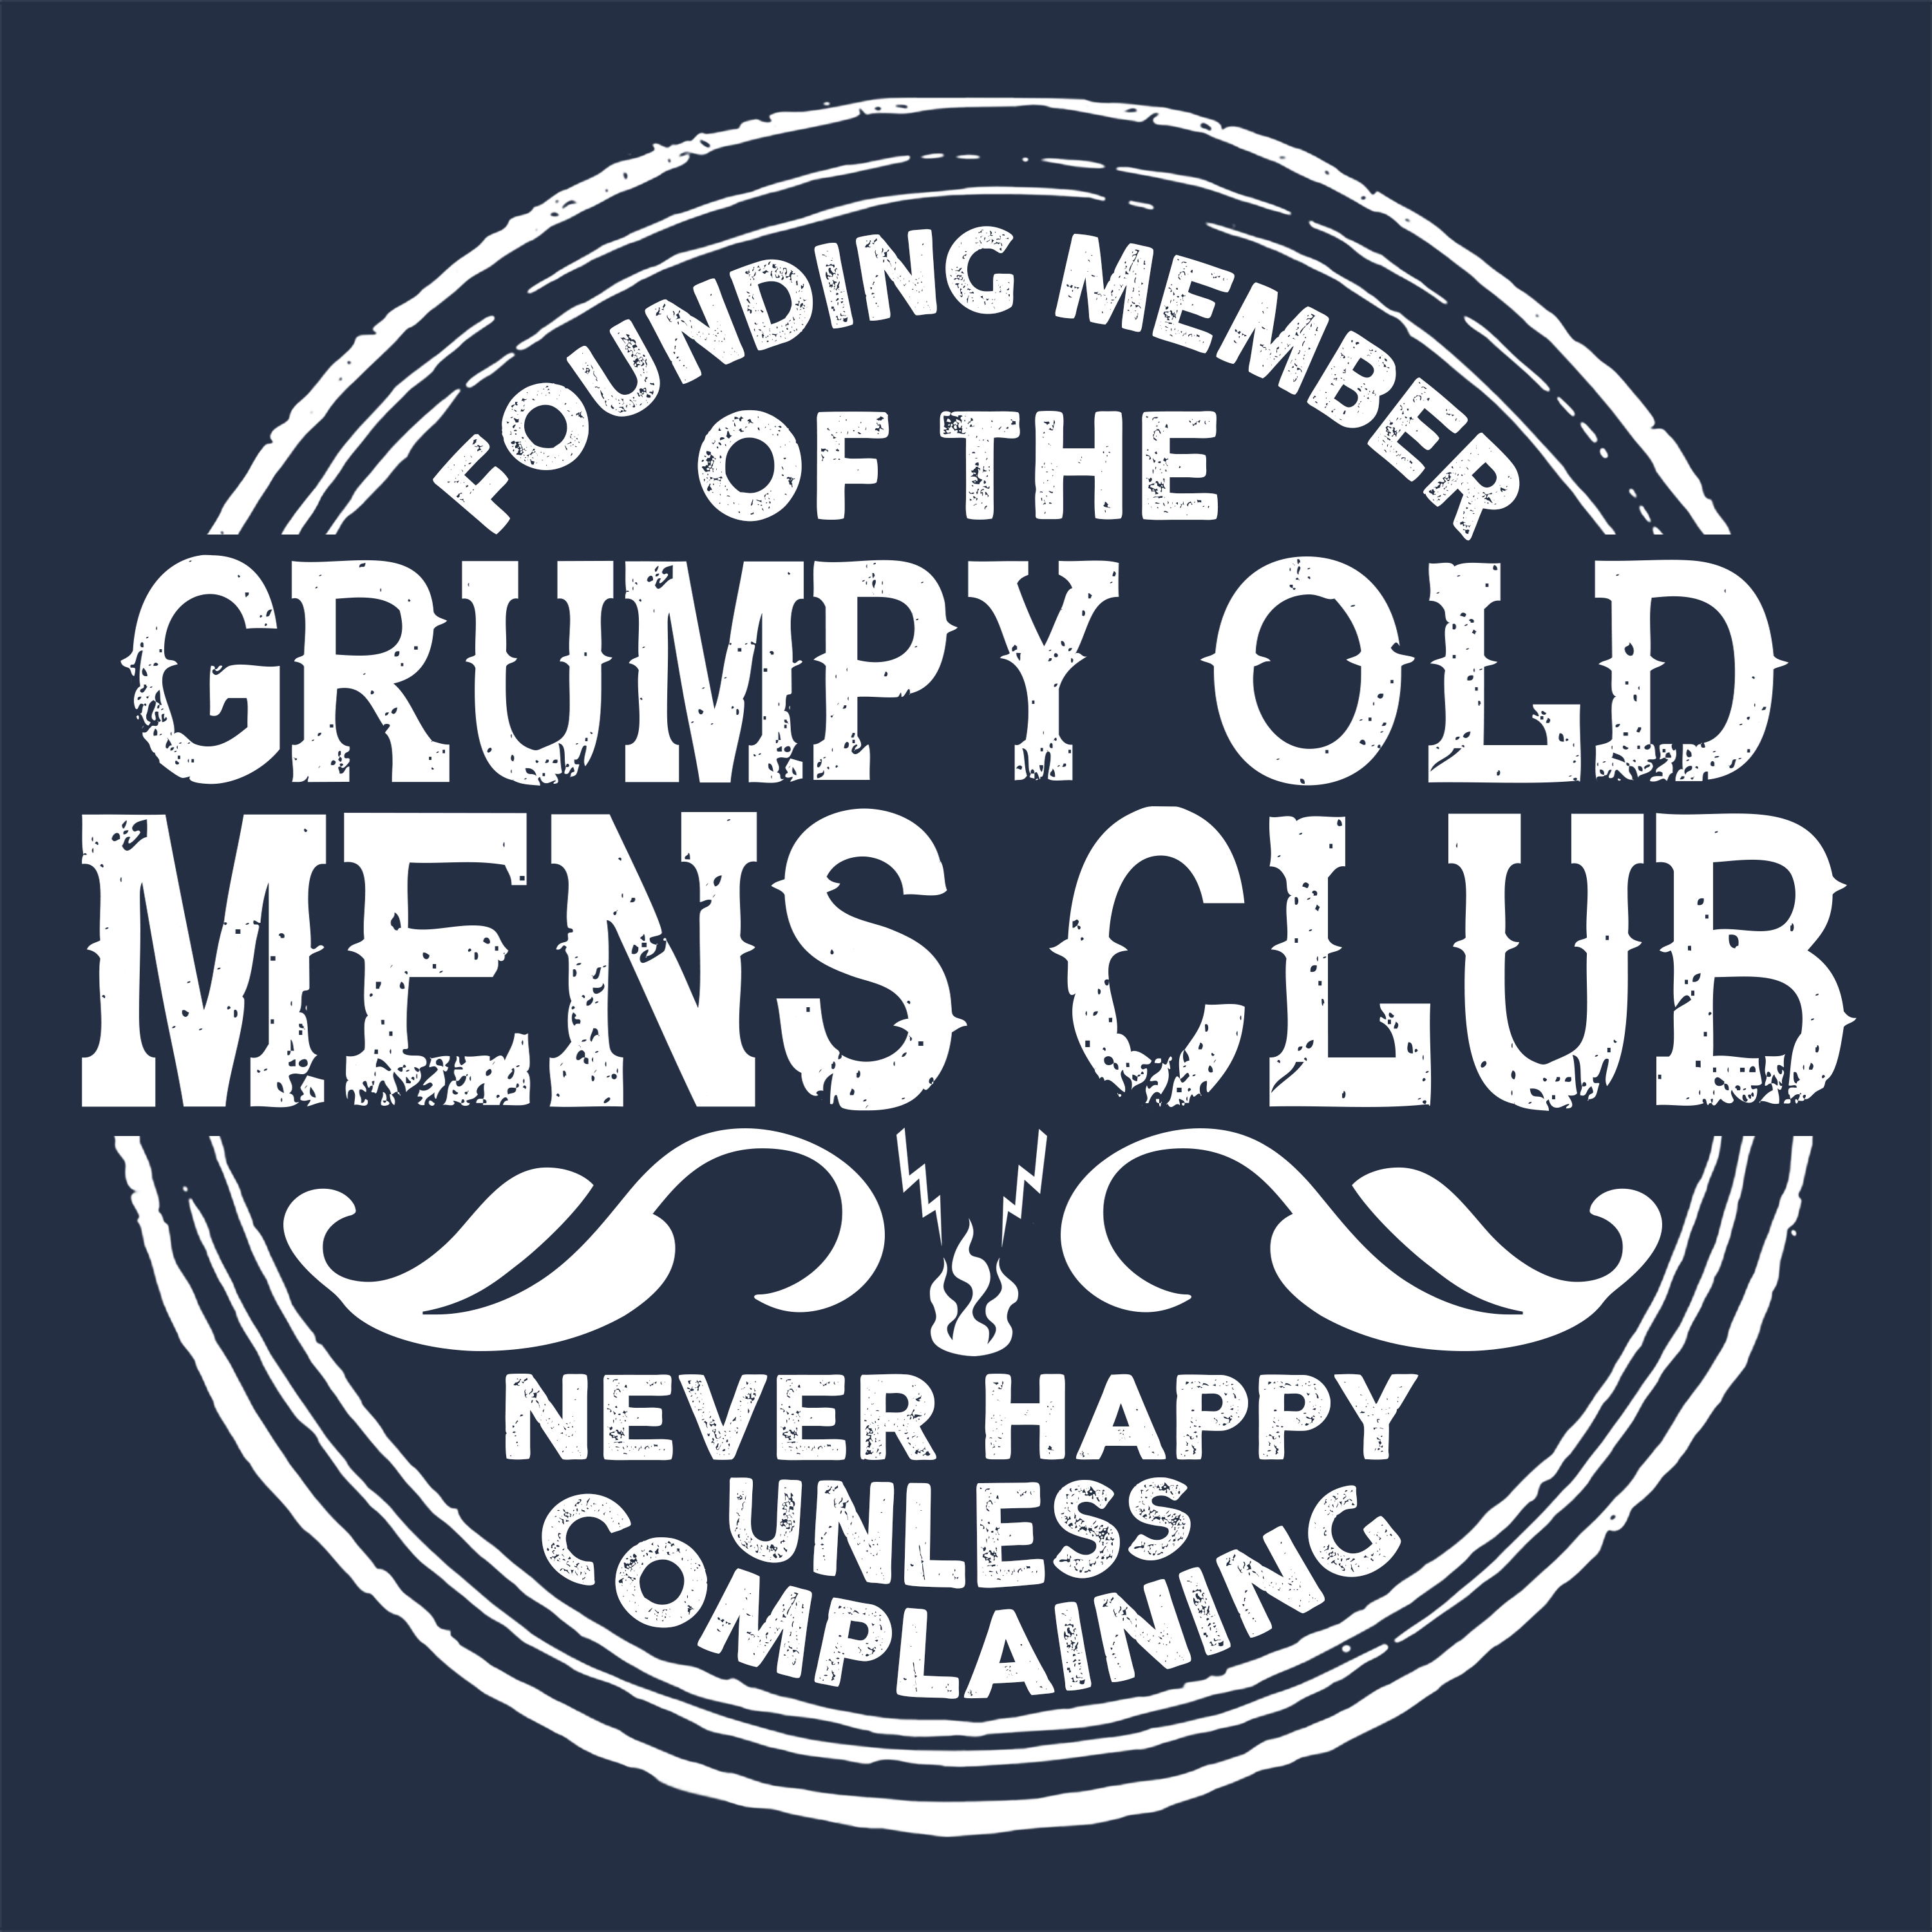 All Grumpy Old Men T Shirts